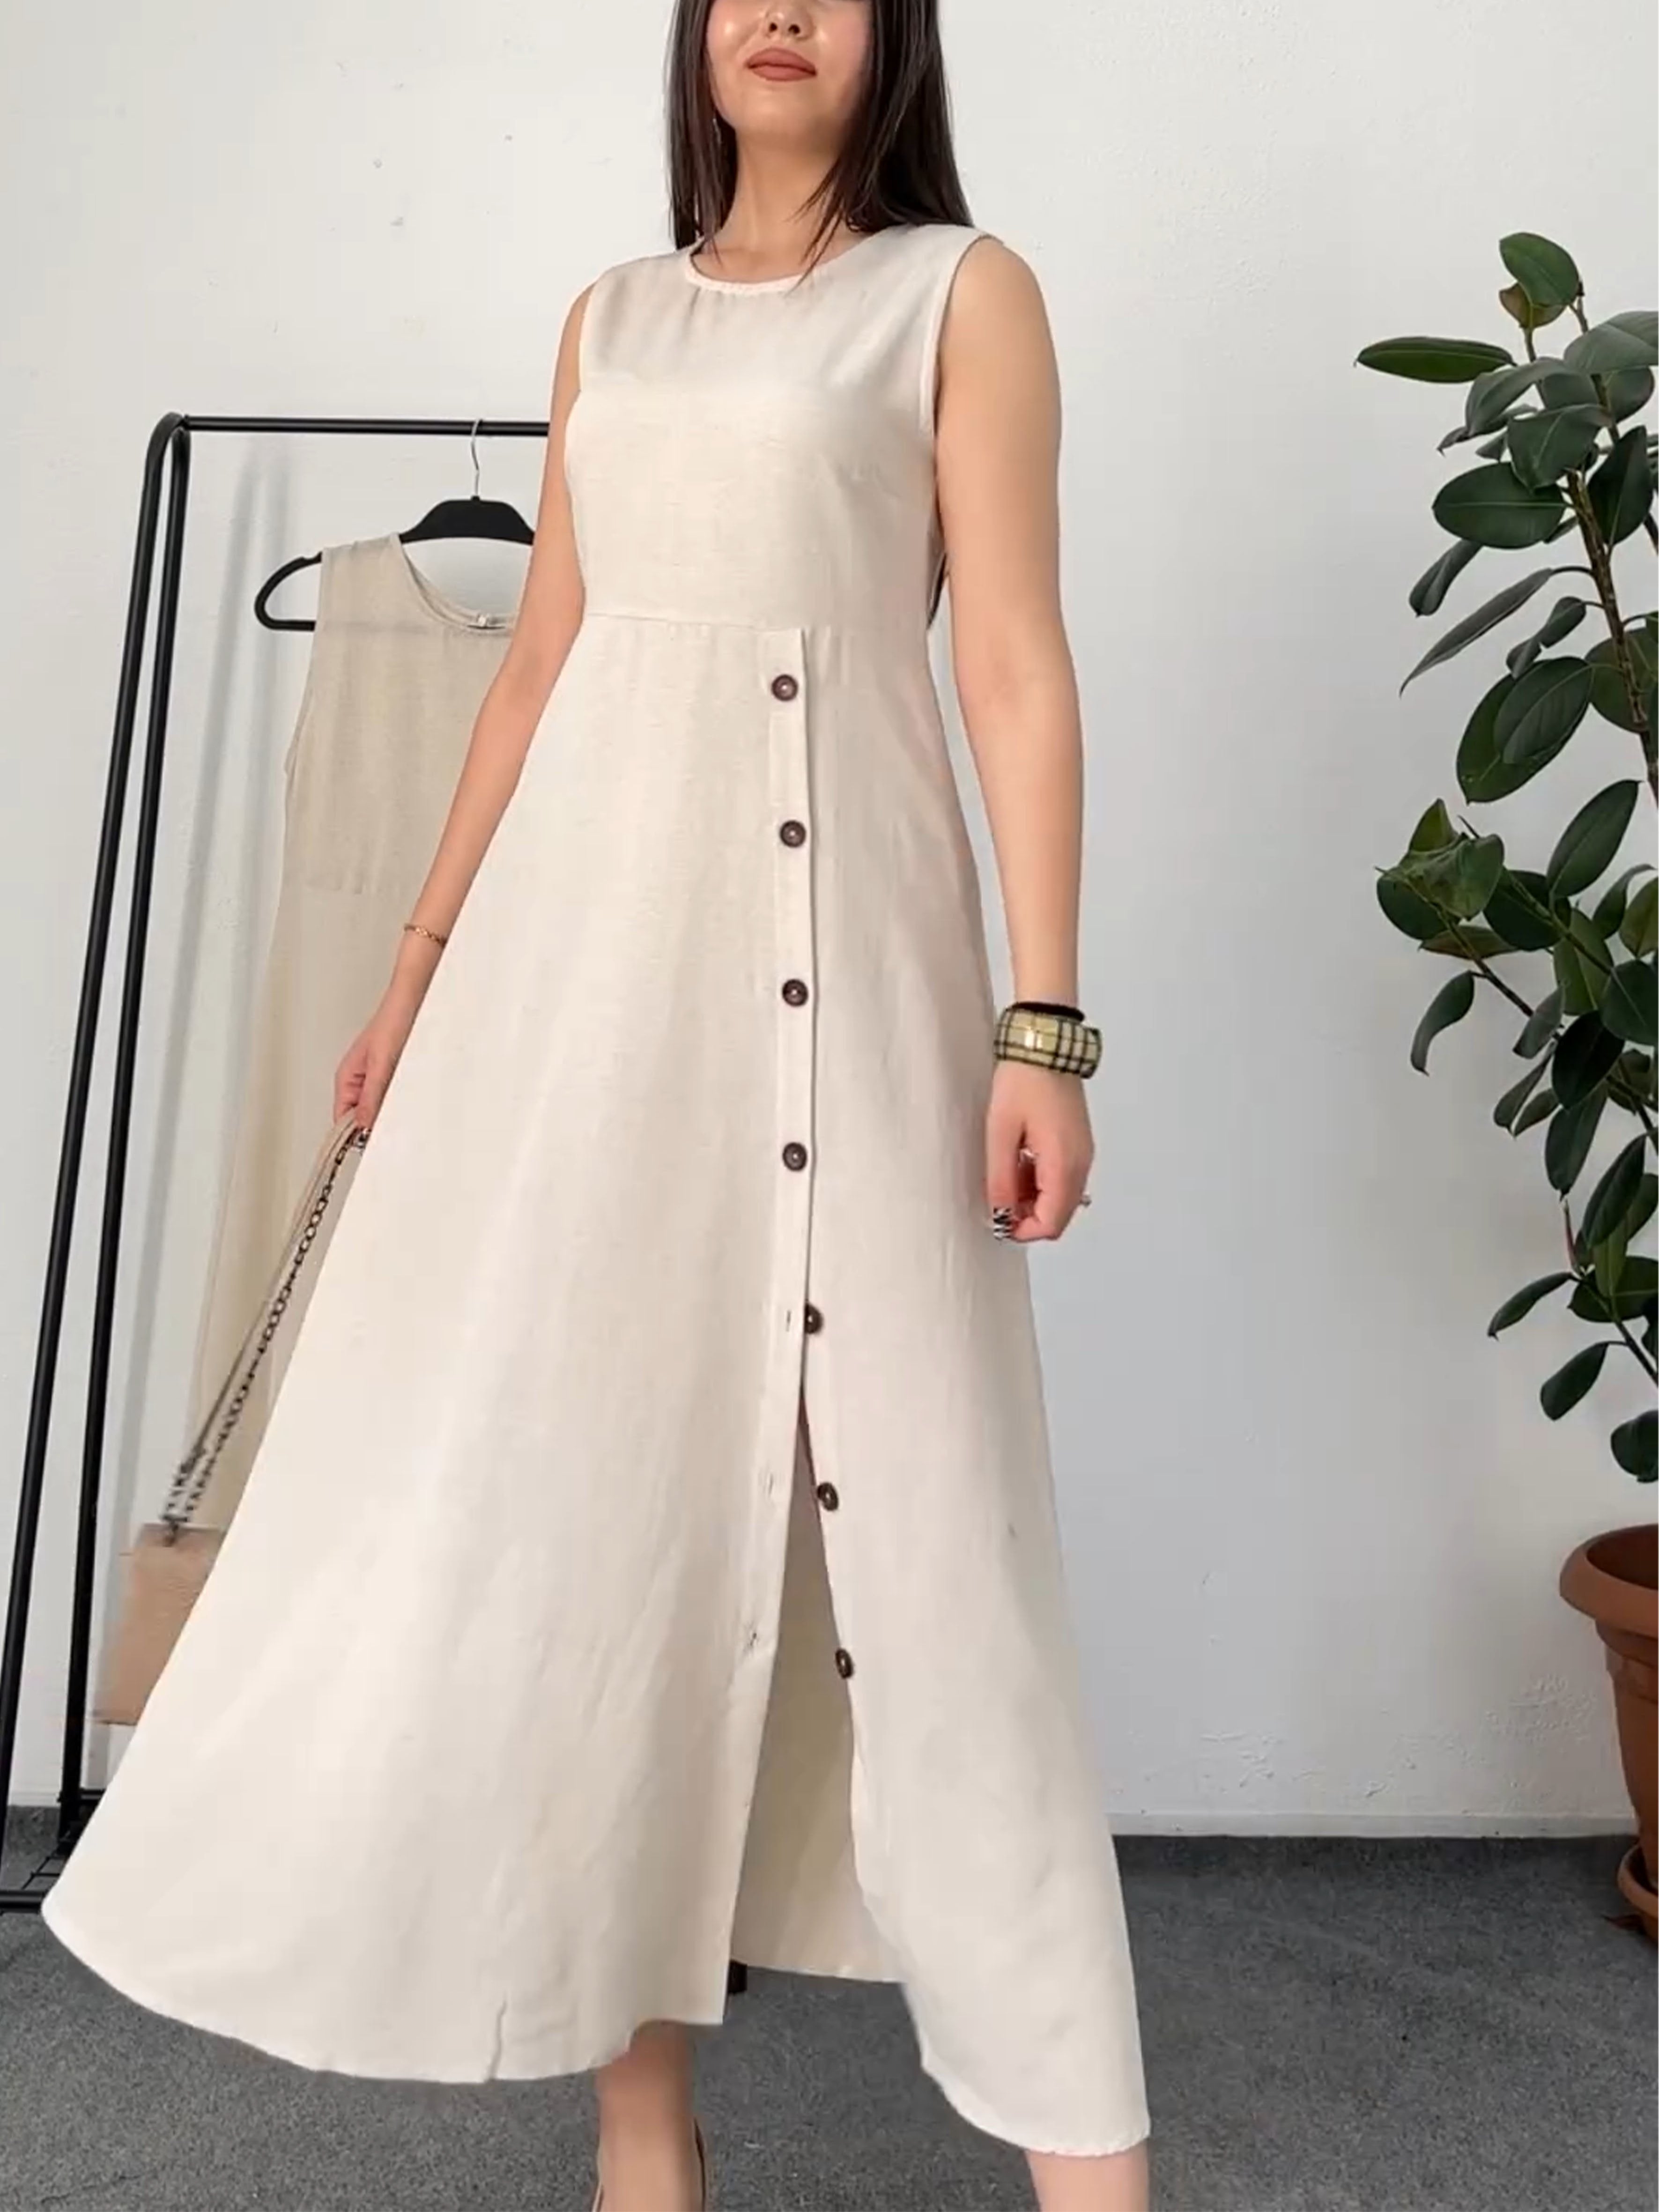 Irregular Buttoned Sleeveless Cotton and Linen Dress